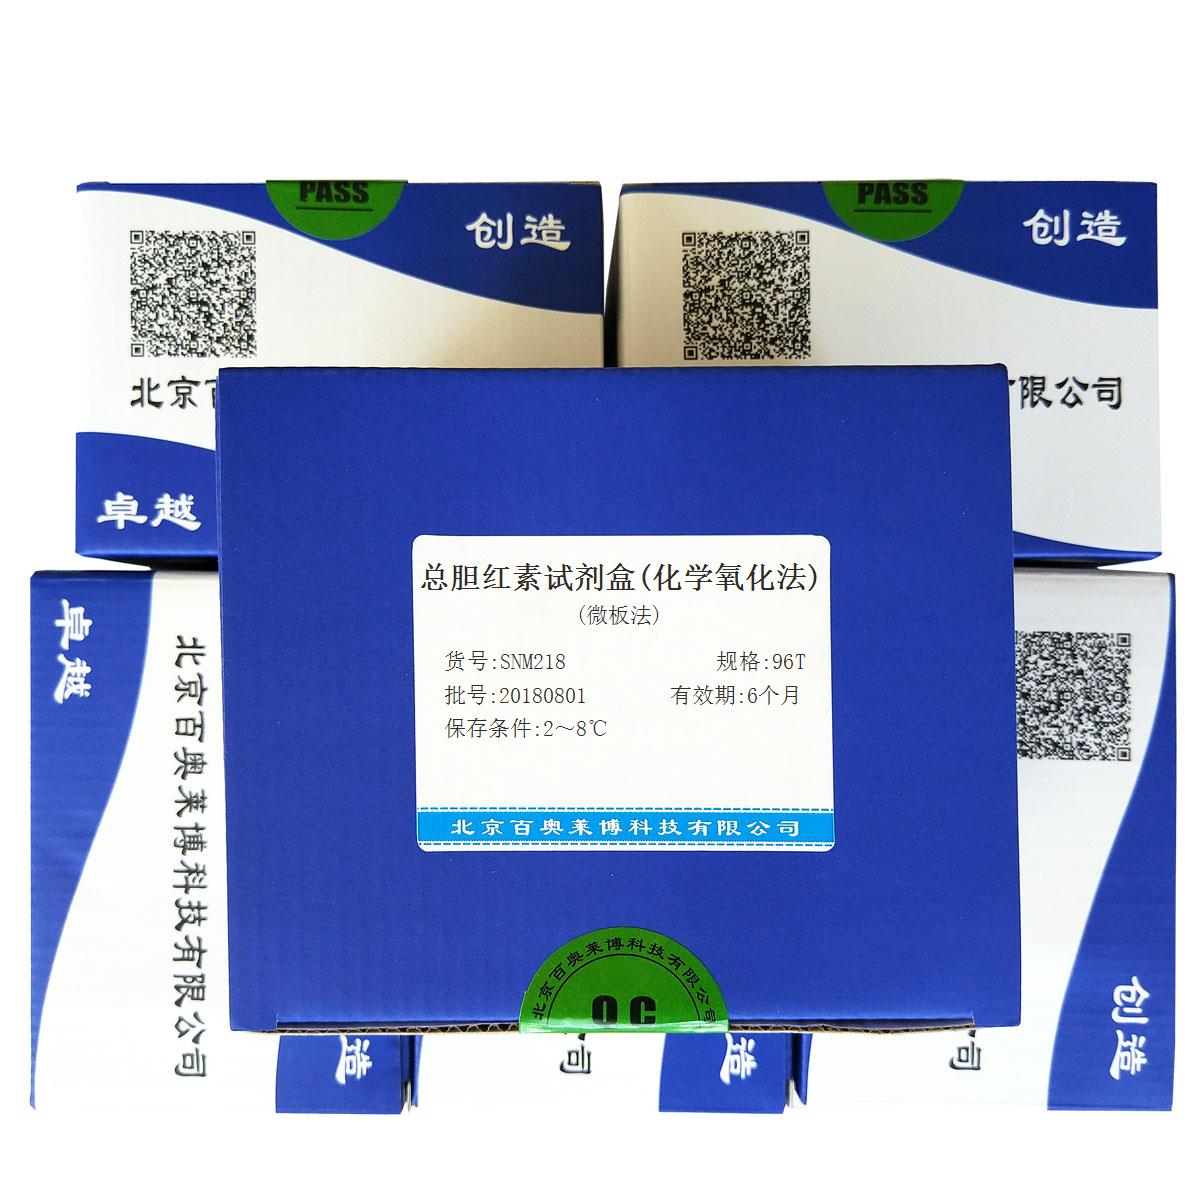 总胆红素试剂盒(化学氧化法)(微板法)